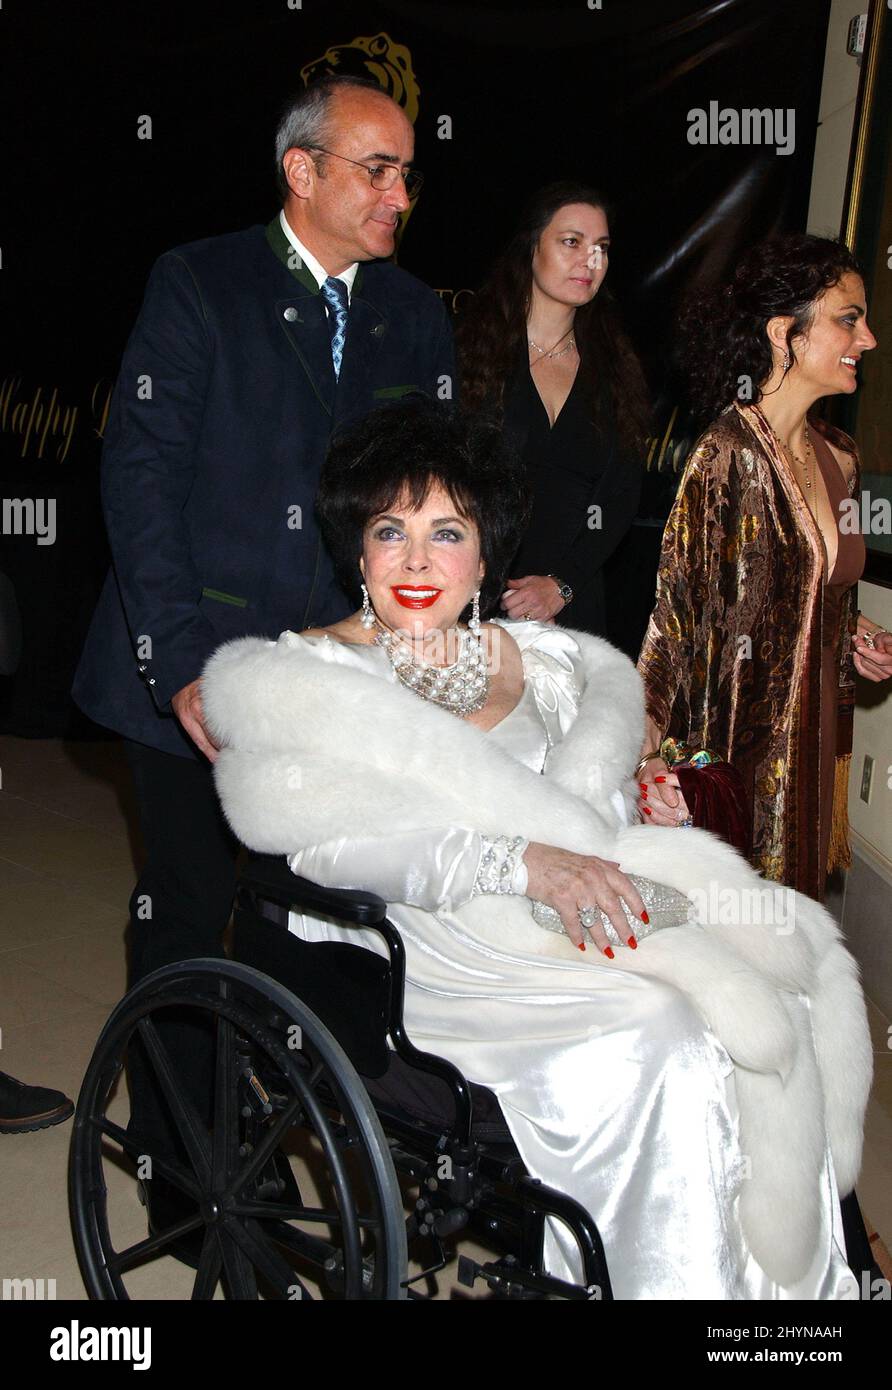 Cumpleaños del Jubileo de Diamante de Elizabeth Taylor en Las Vegas. Foto: Prensa del Reino Unido Foto de stock